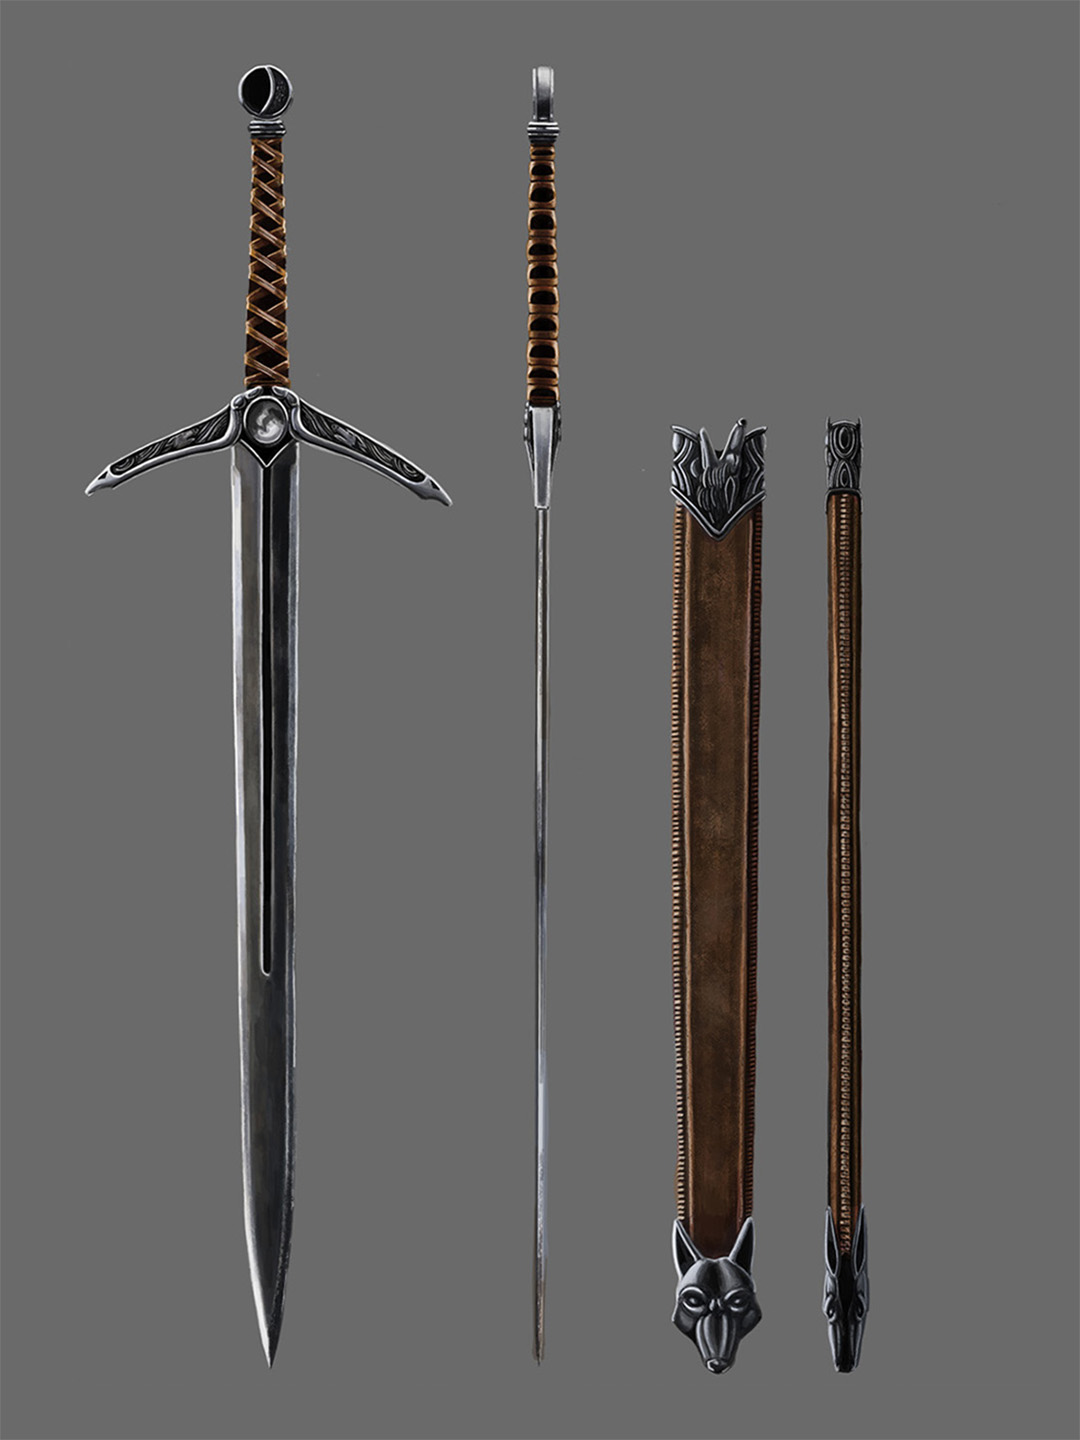 Weapon design: Wolf Sword by JPierceArt on DeviantArt